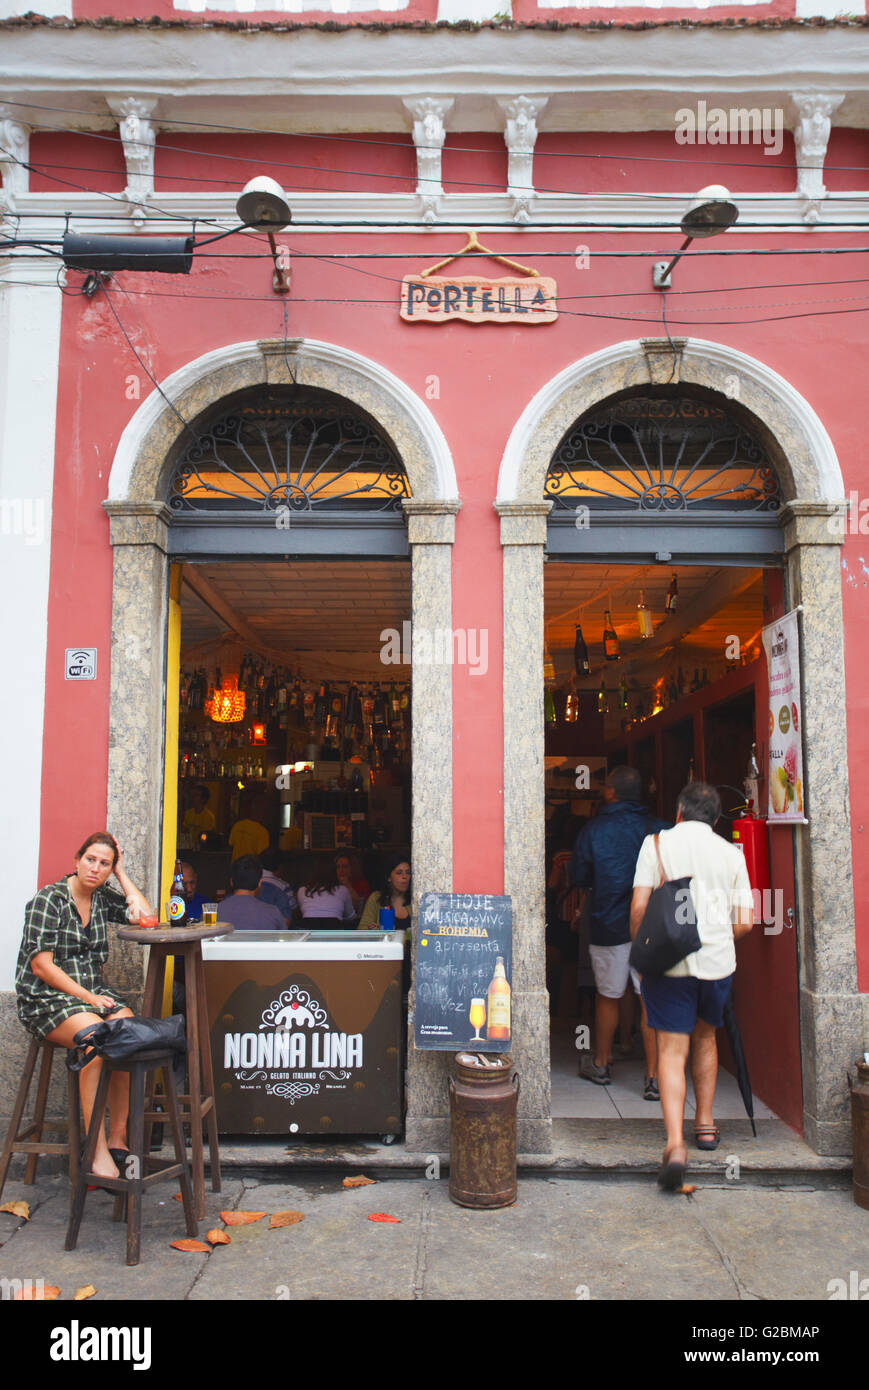 Portella cafe, Santa Teresa, Rio de Janeiro, Brazil Stock Photo